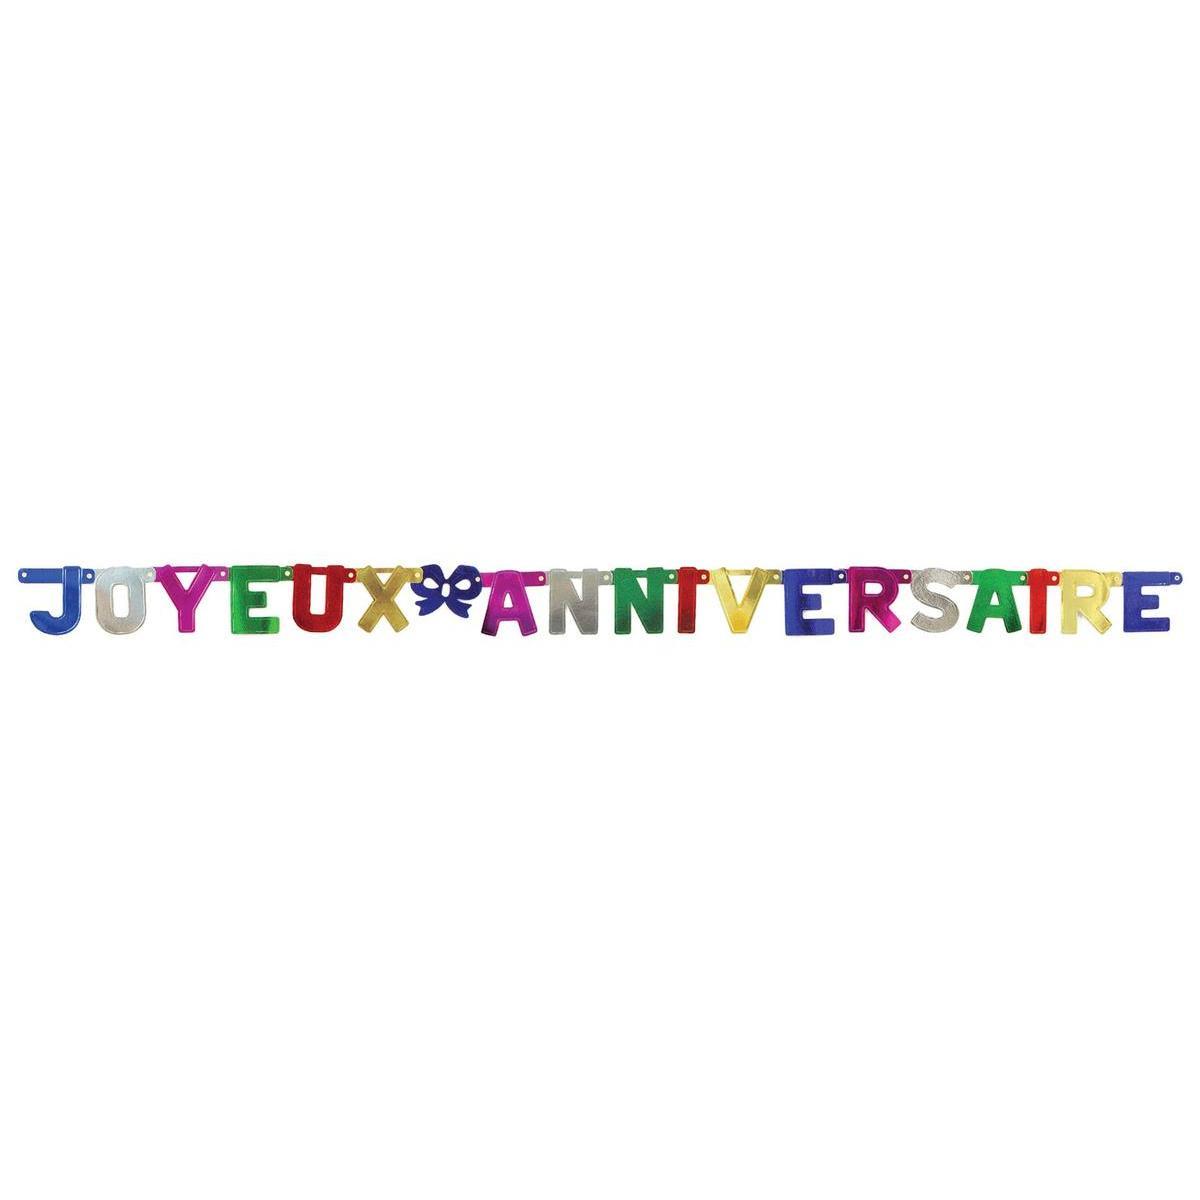 Guirlande joyeux anniversaire - 190 x 11 cm - Multicolore